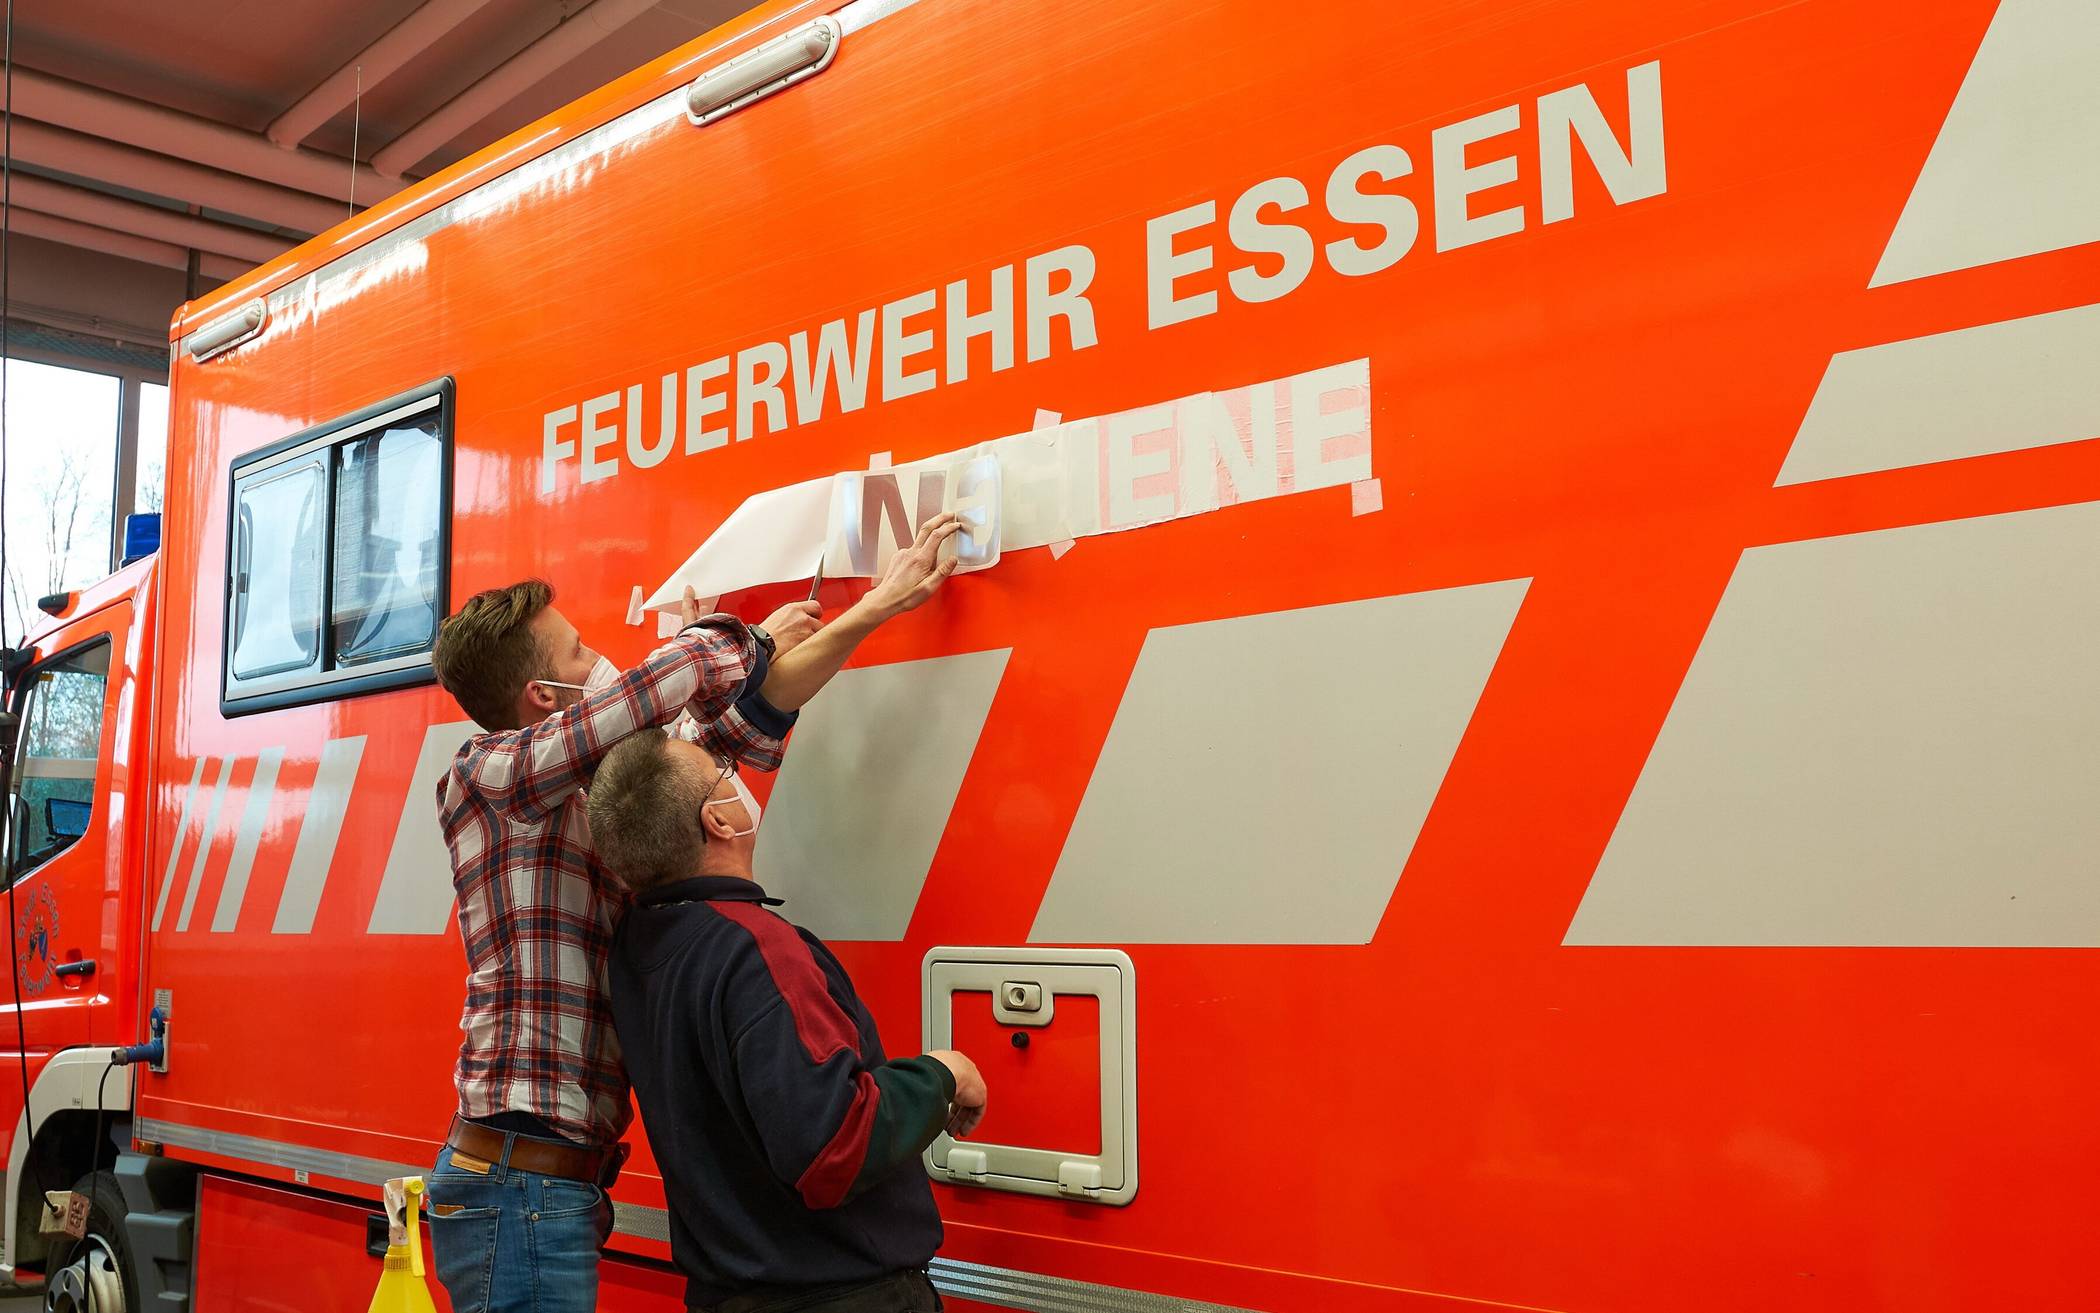  Mitarbeiter der Lebenshilfe Wuppertal beschriften einen Essener Feuerwehrwagen.  